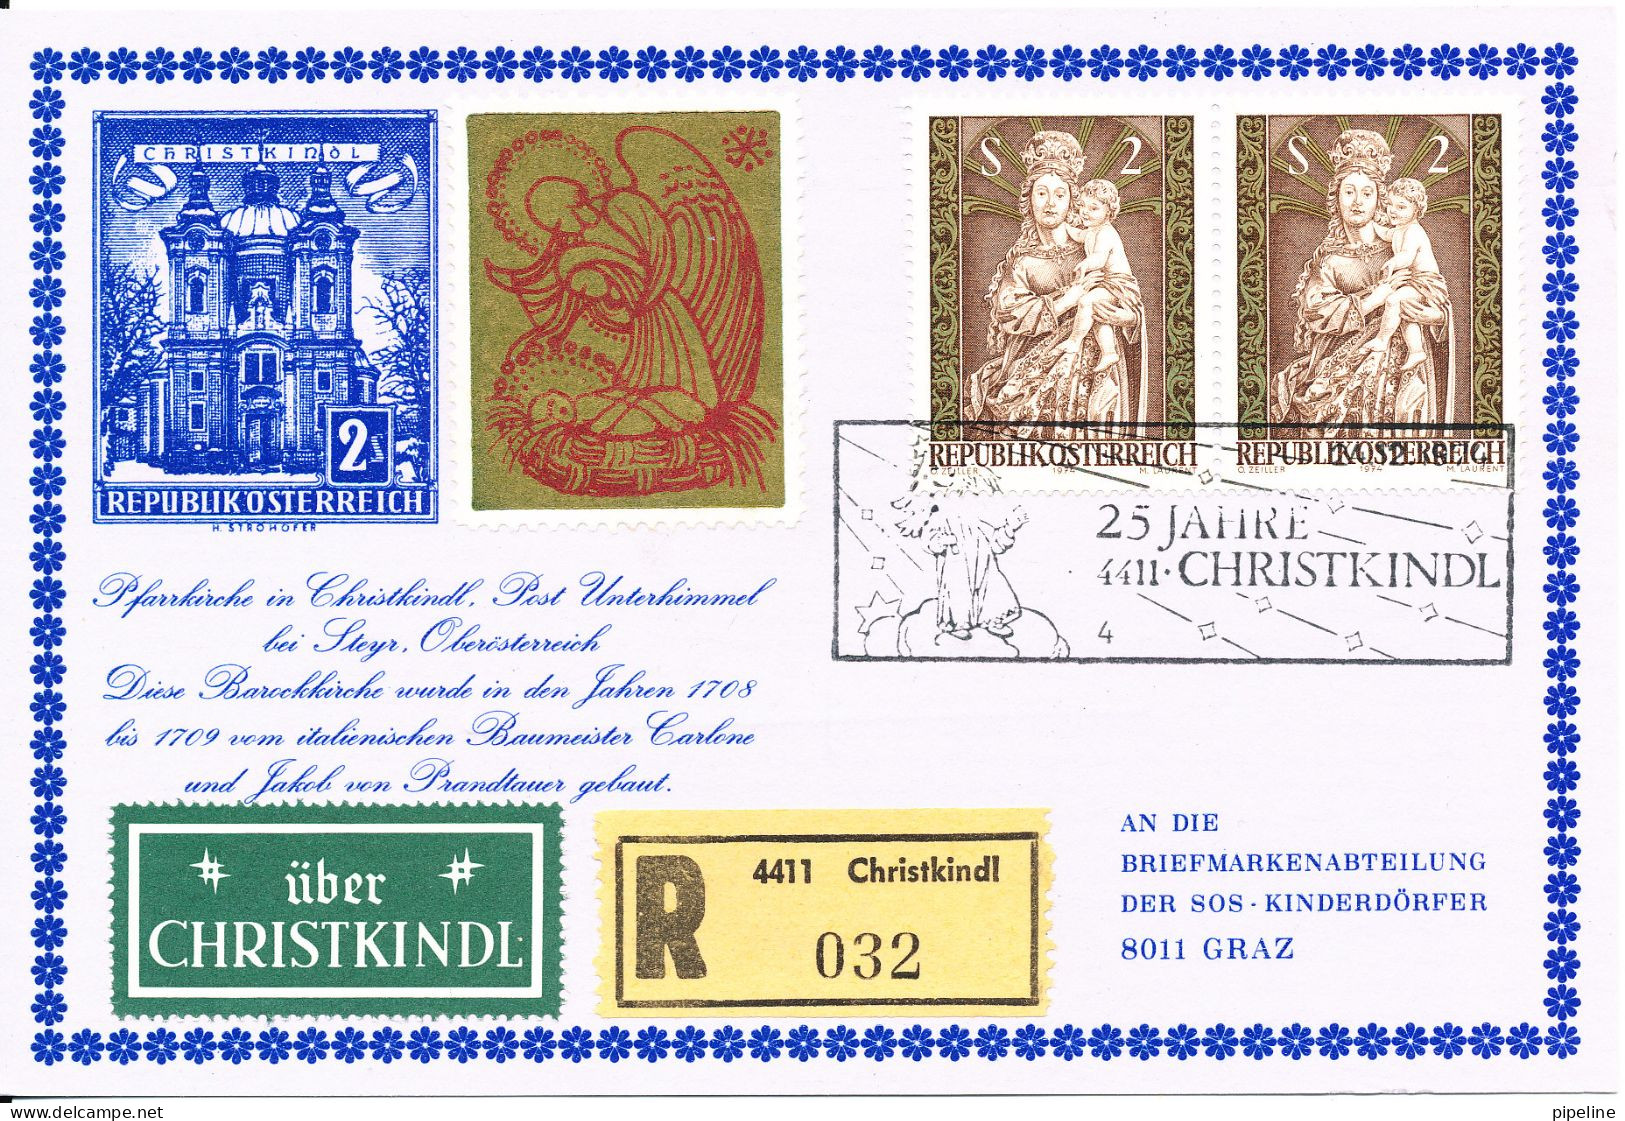 Austria Registered Card Christkindl  24-12-1974 Sent To SOS Kinderdörfer Graz - Lettres & Documents